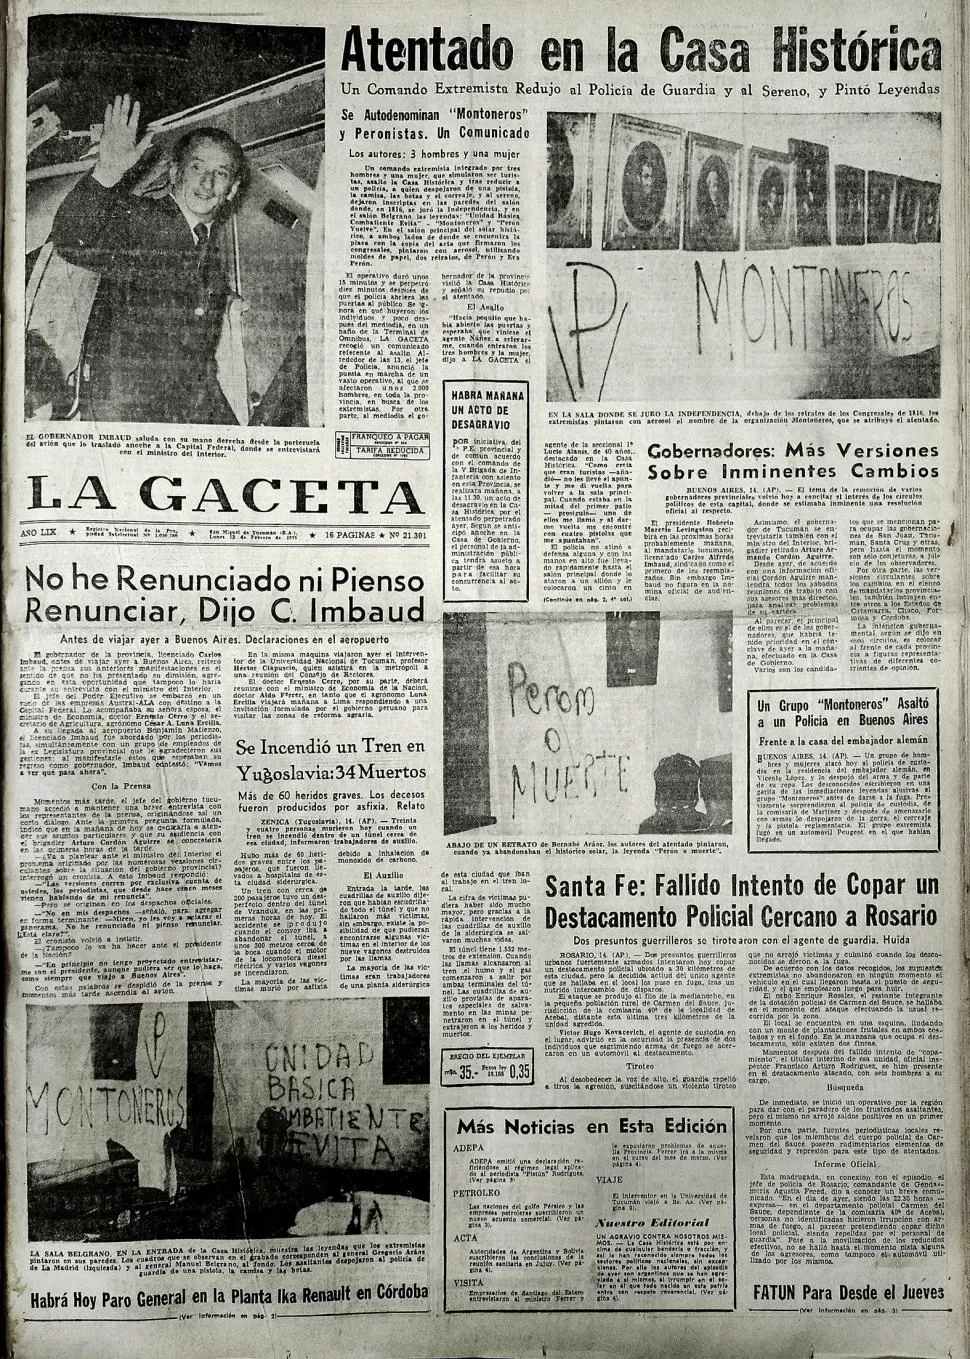 NOTICIAS DE AYER. Así fue la cobertura que realizó LA GACETA sobre los hechos ocurridos en aquellas agitadas jornadas de febrero de 1971, en torno al ataque vandálico